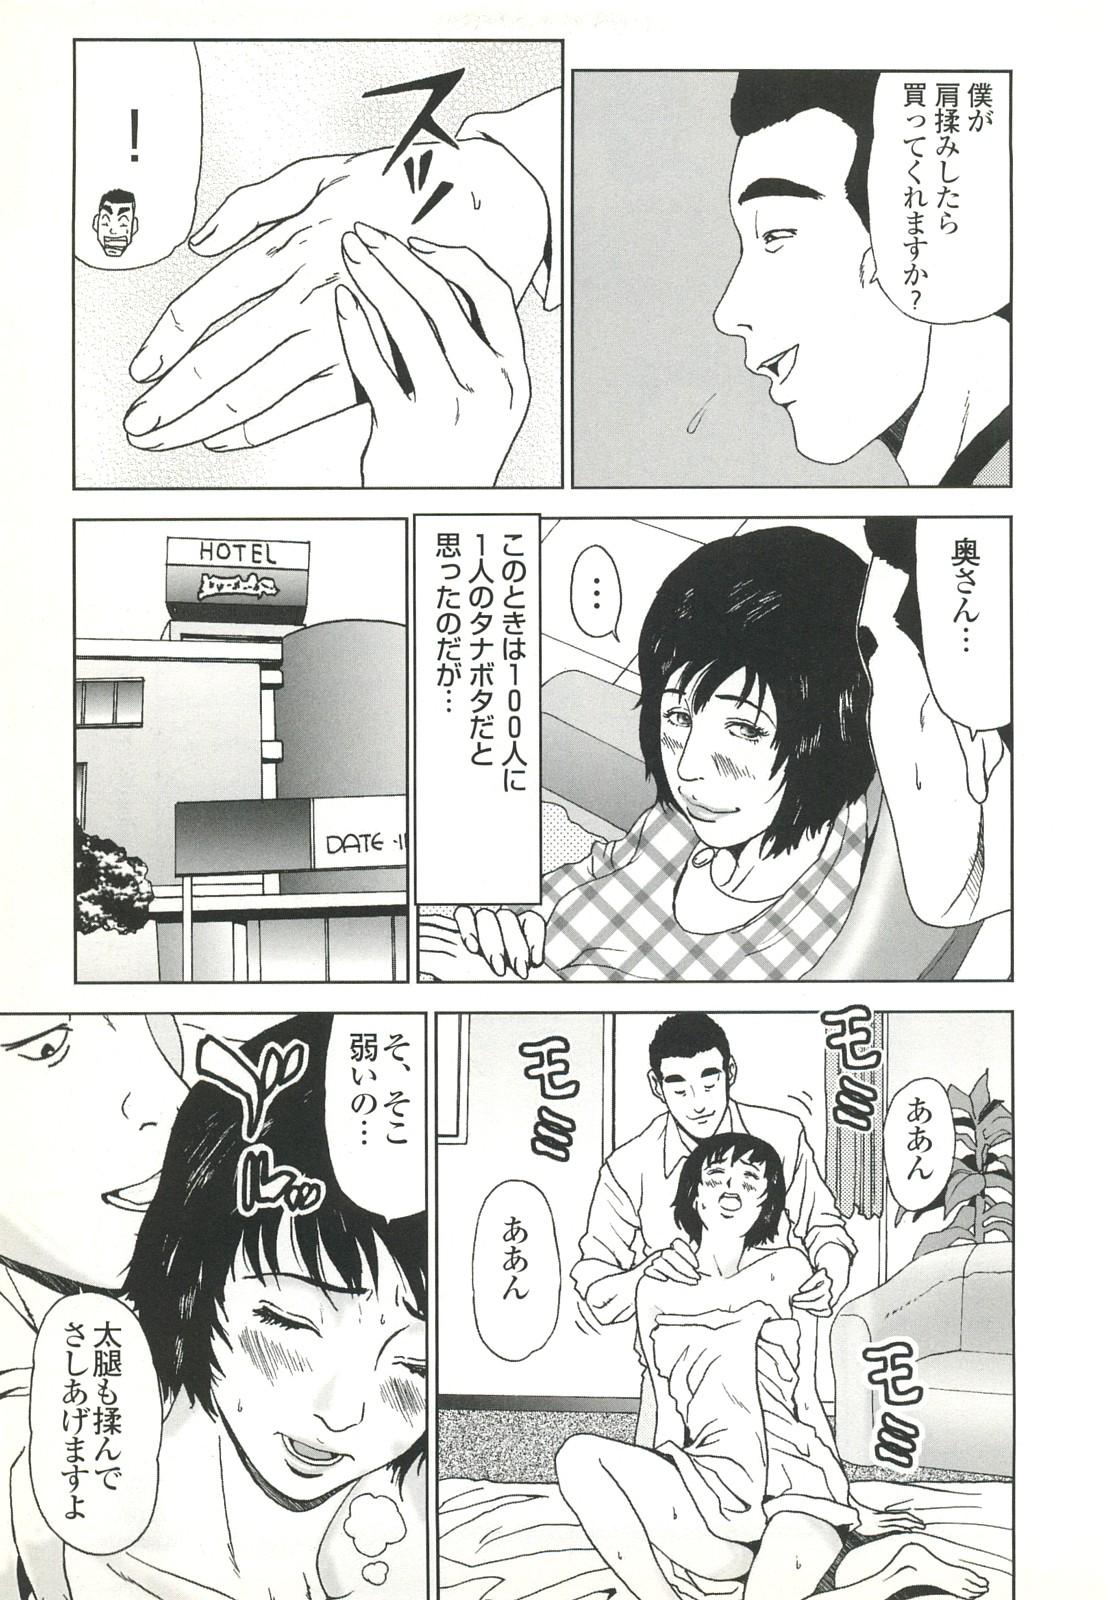 コミック裏モノJAPAN Vol.18 今井のりたつスペシャル号 80